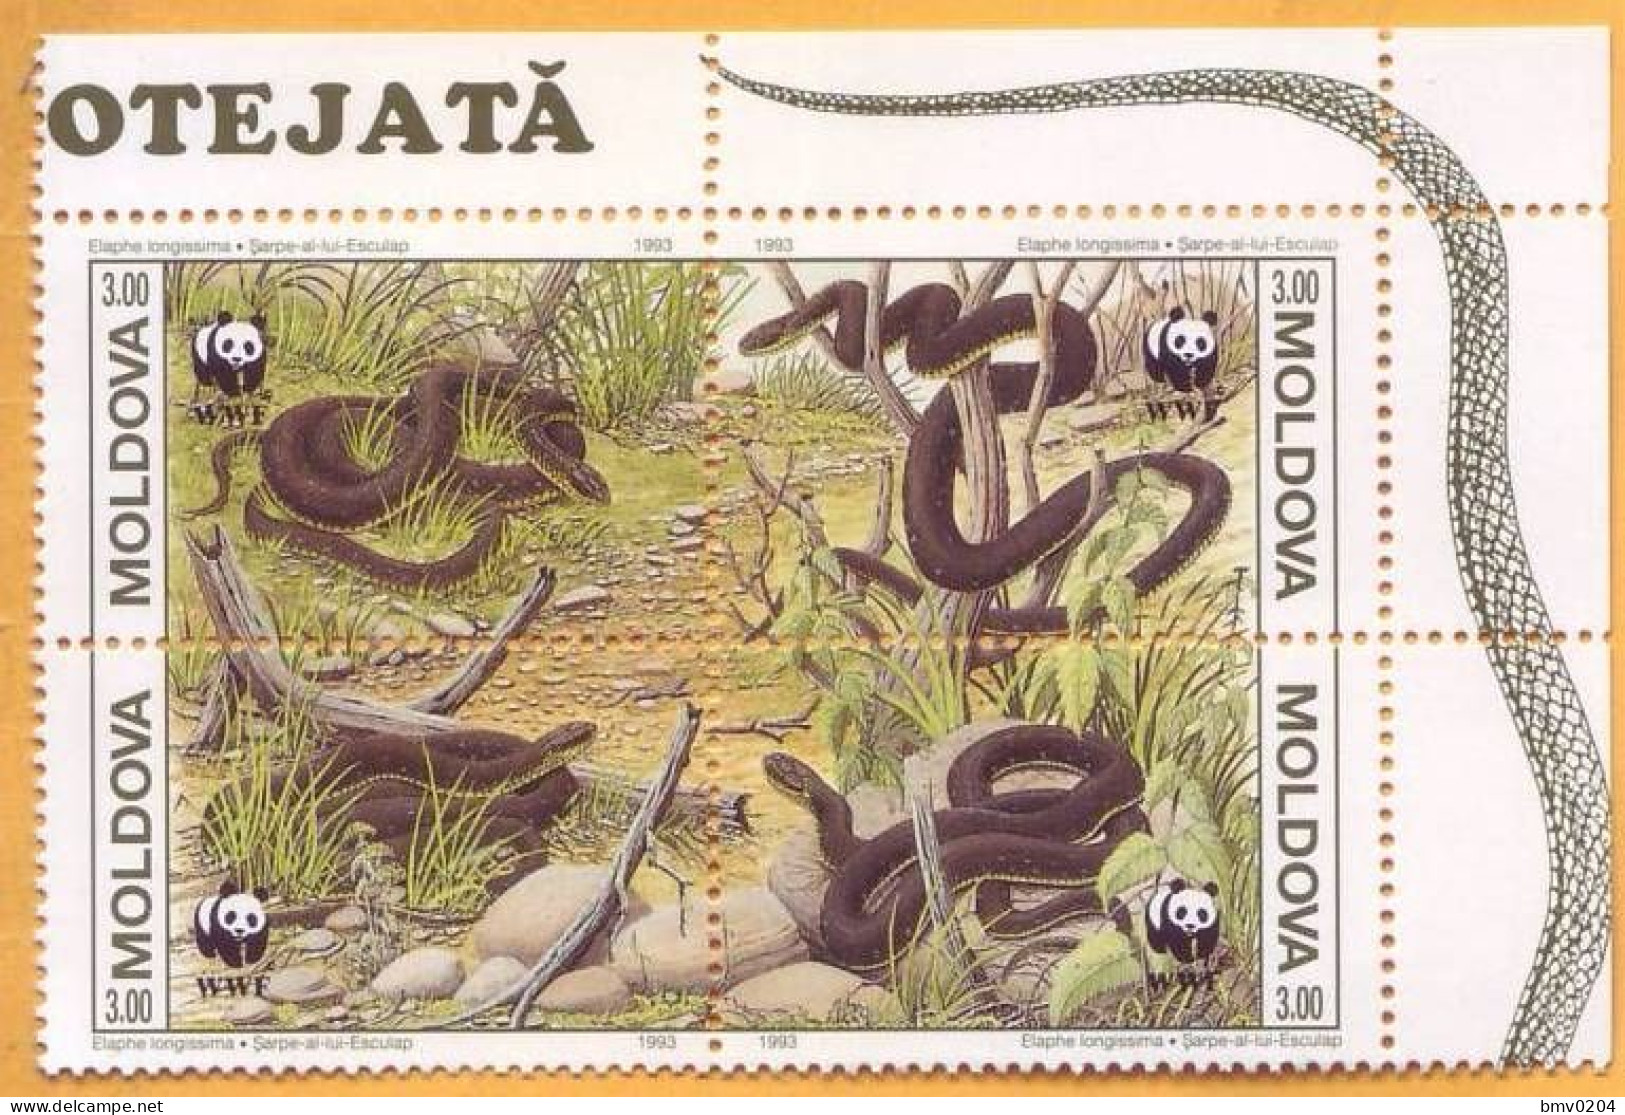 1993 Moldova Moldavie, Fauna, Snakes, Nature, WWF, 4v Mint - Schlangen